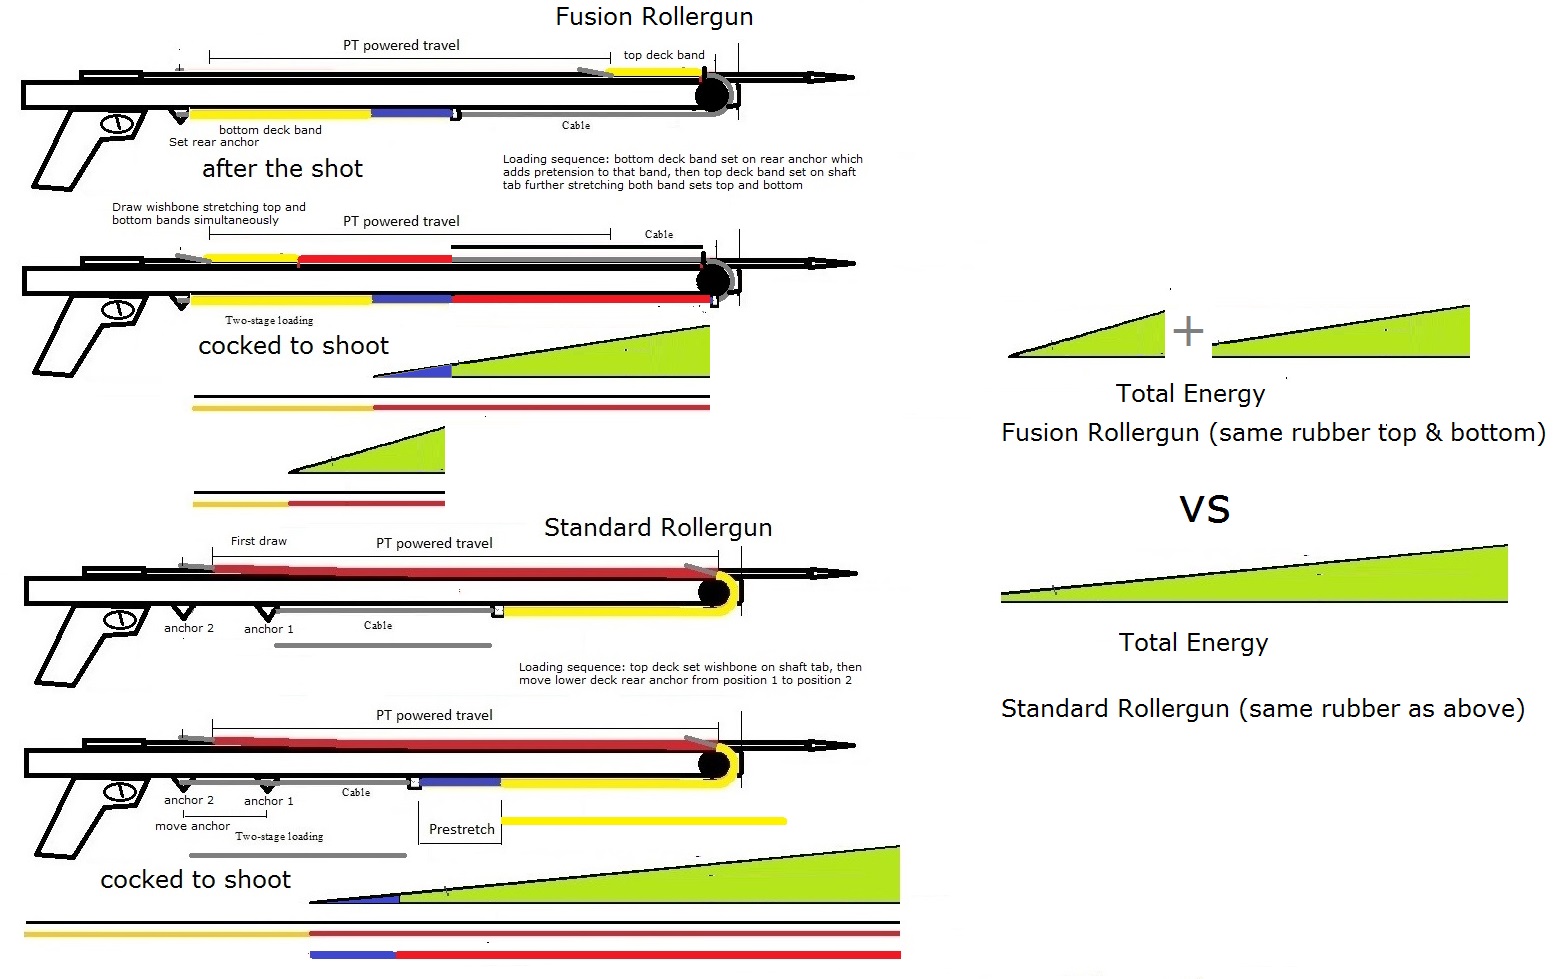 Fusion rollergun energy comparison